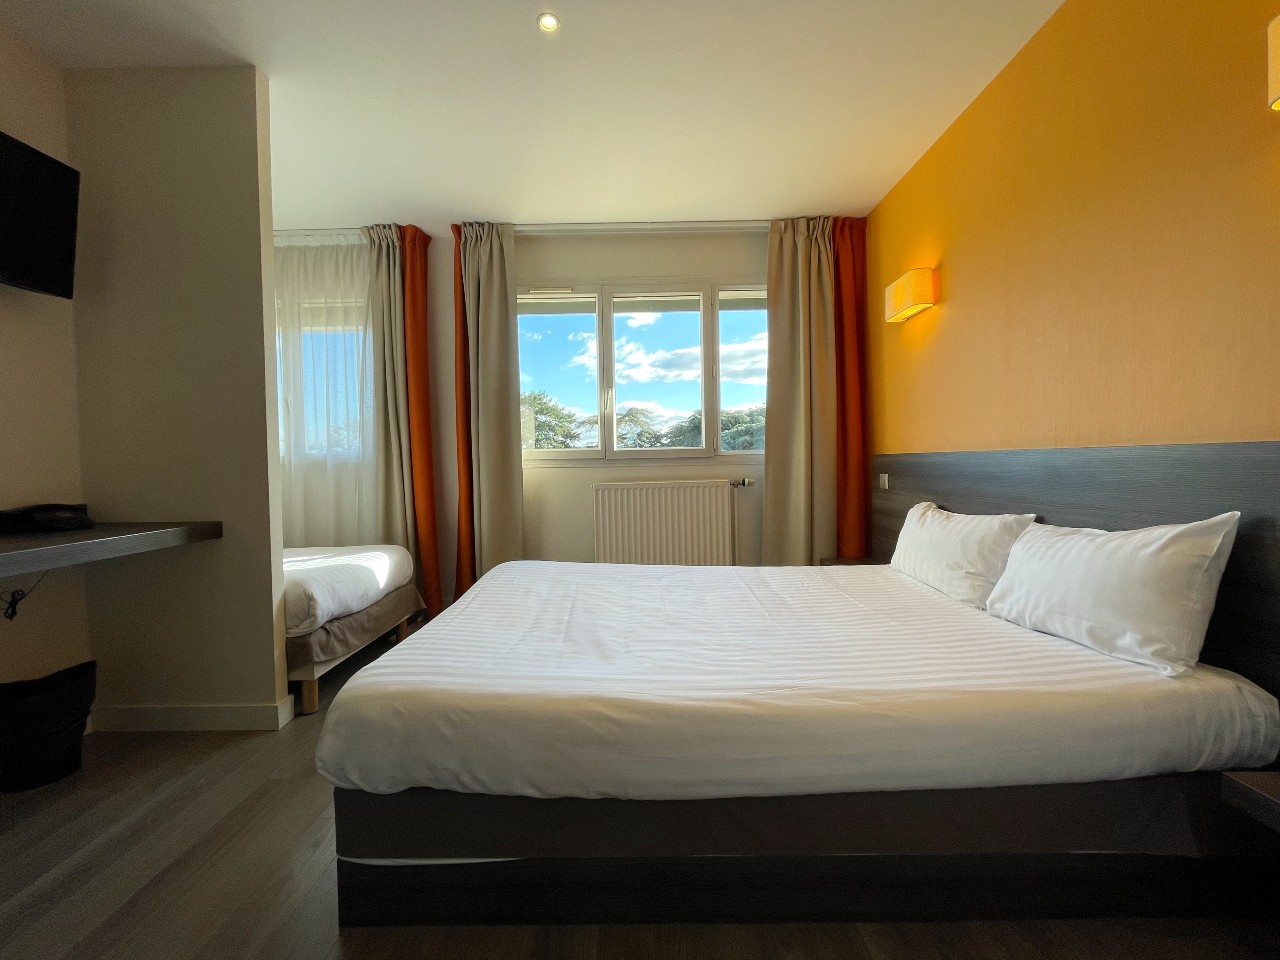 Lors d'un séminaire sur plusieurs jours à Valpré vous pourrez profiter du confort des chambres de l'hôtel